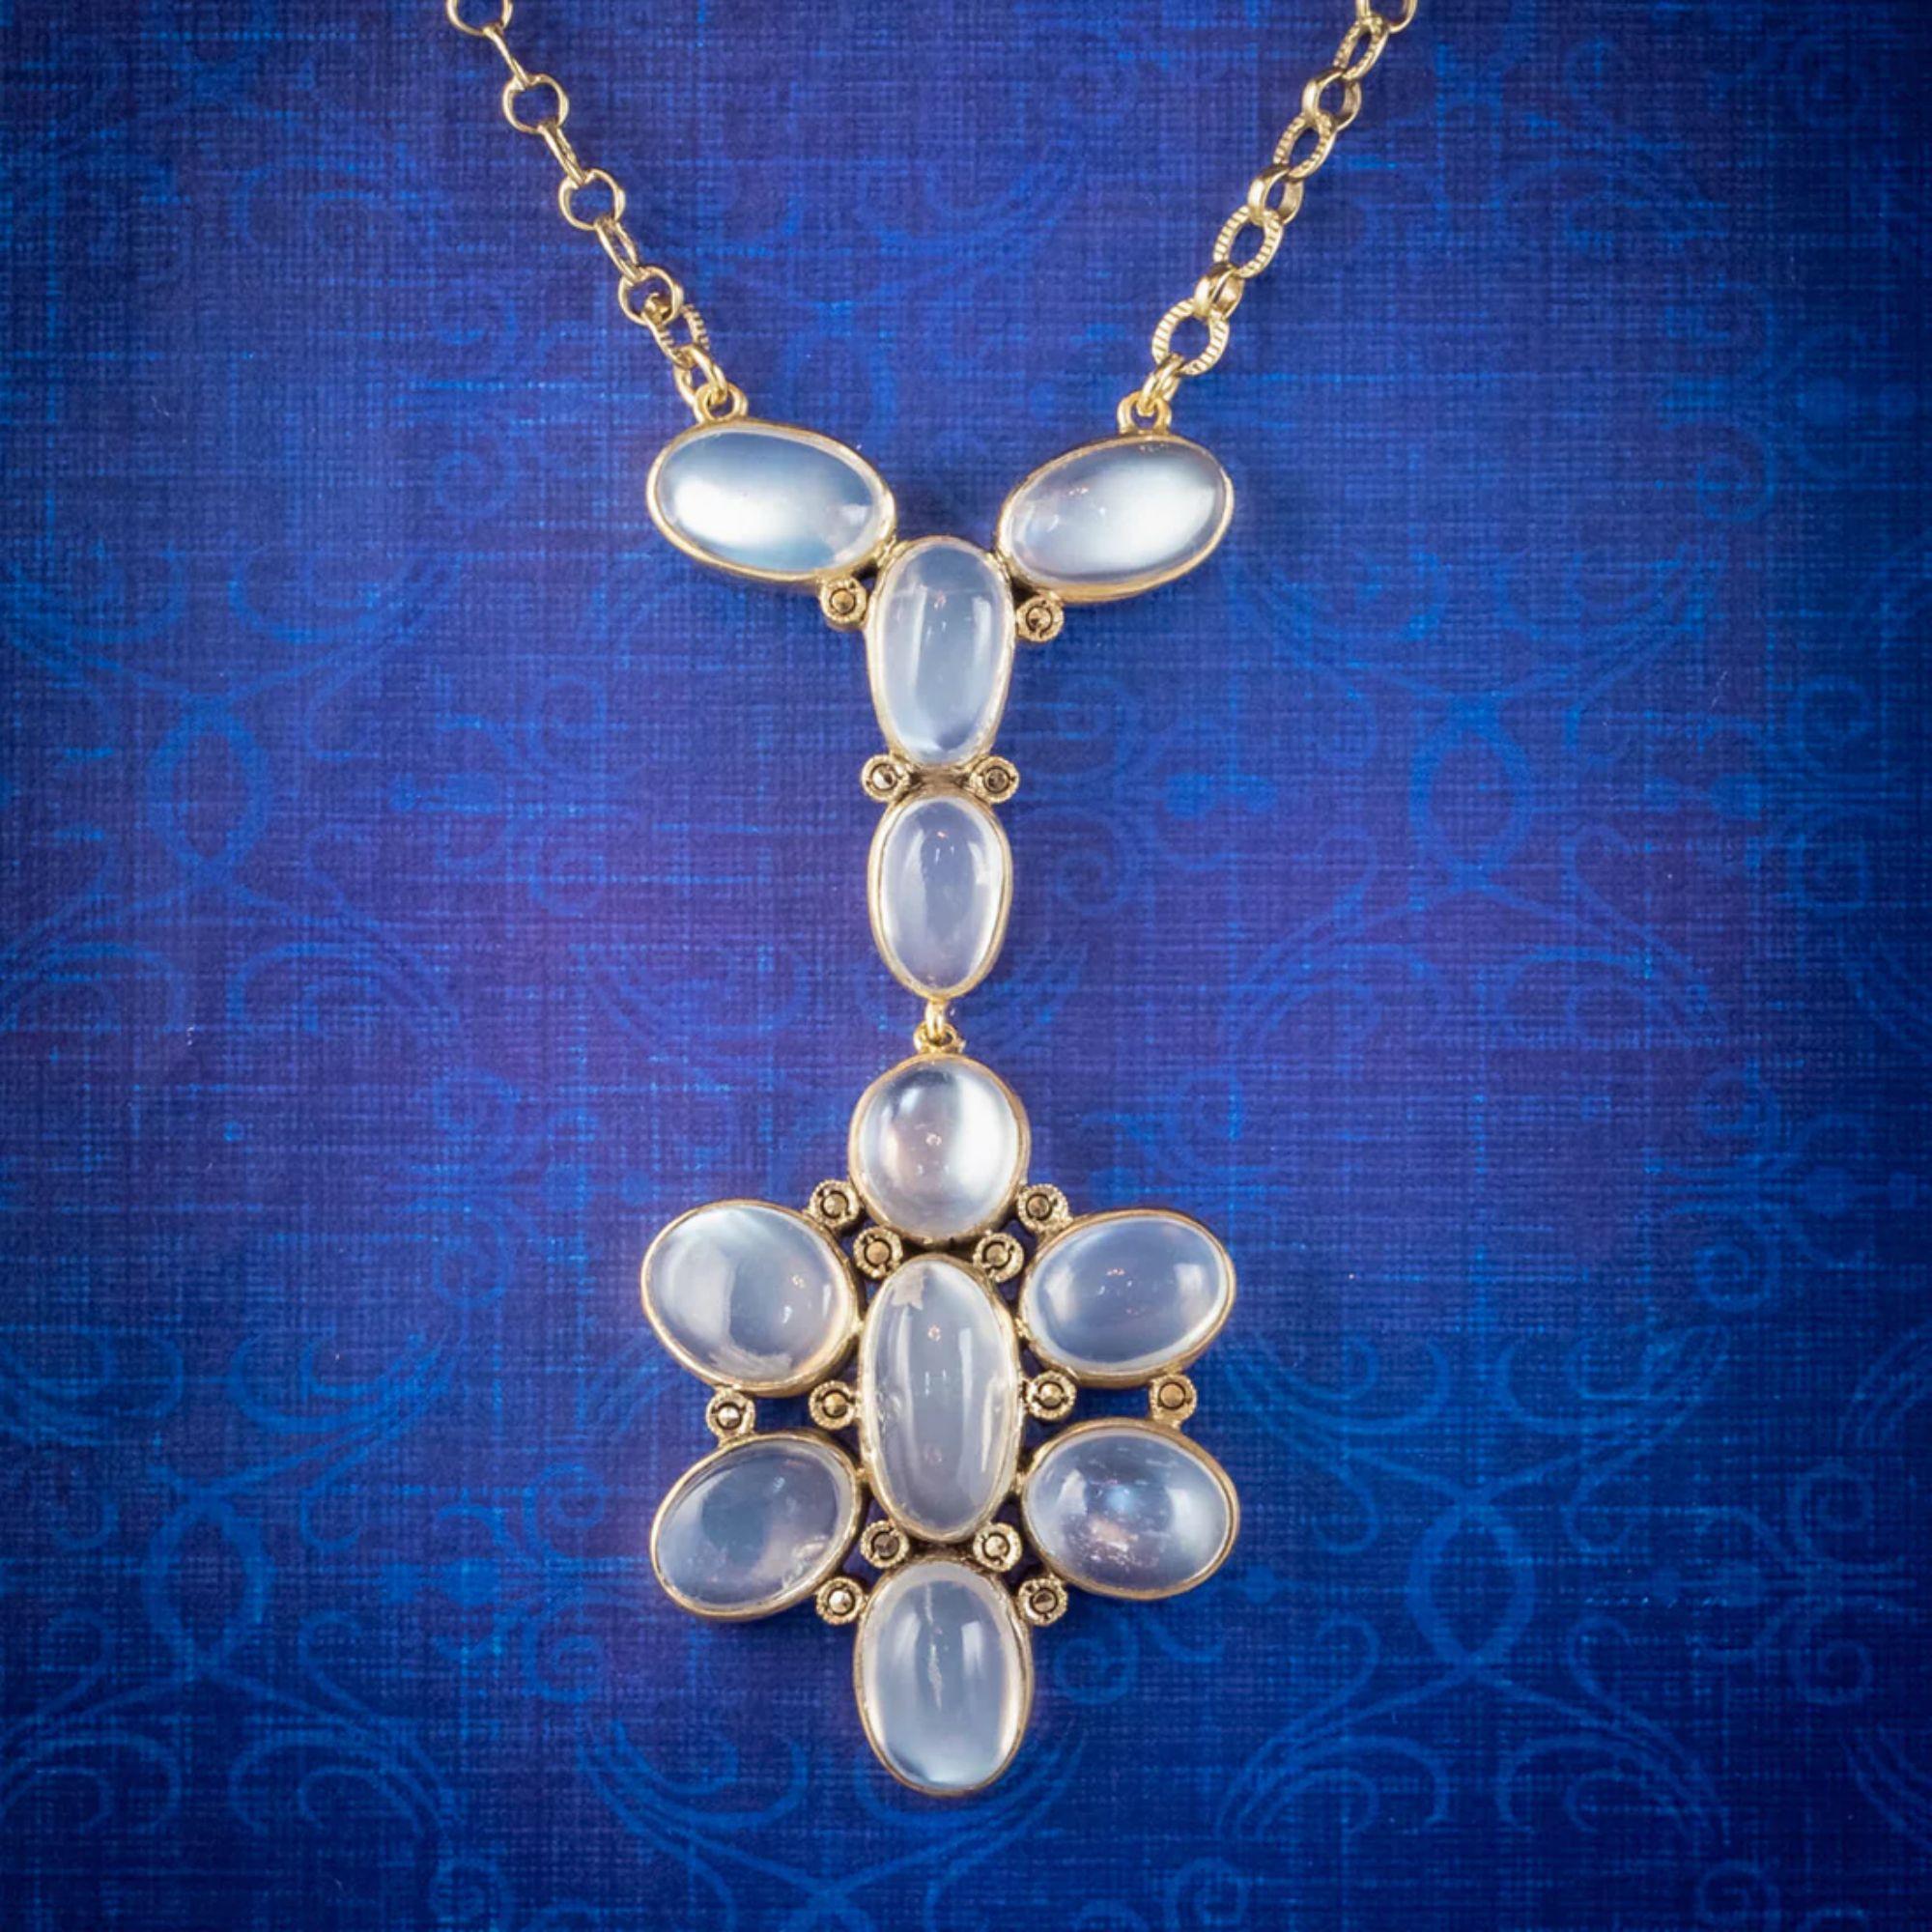 Antique Edwardian Moonstone Lavaliere Pendant Necklace Silver Gold Gilt For Sale 1